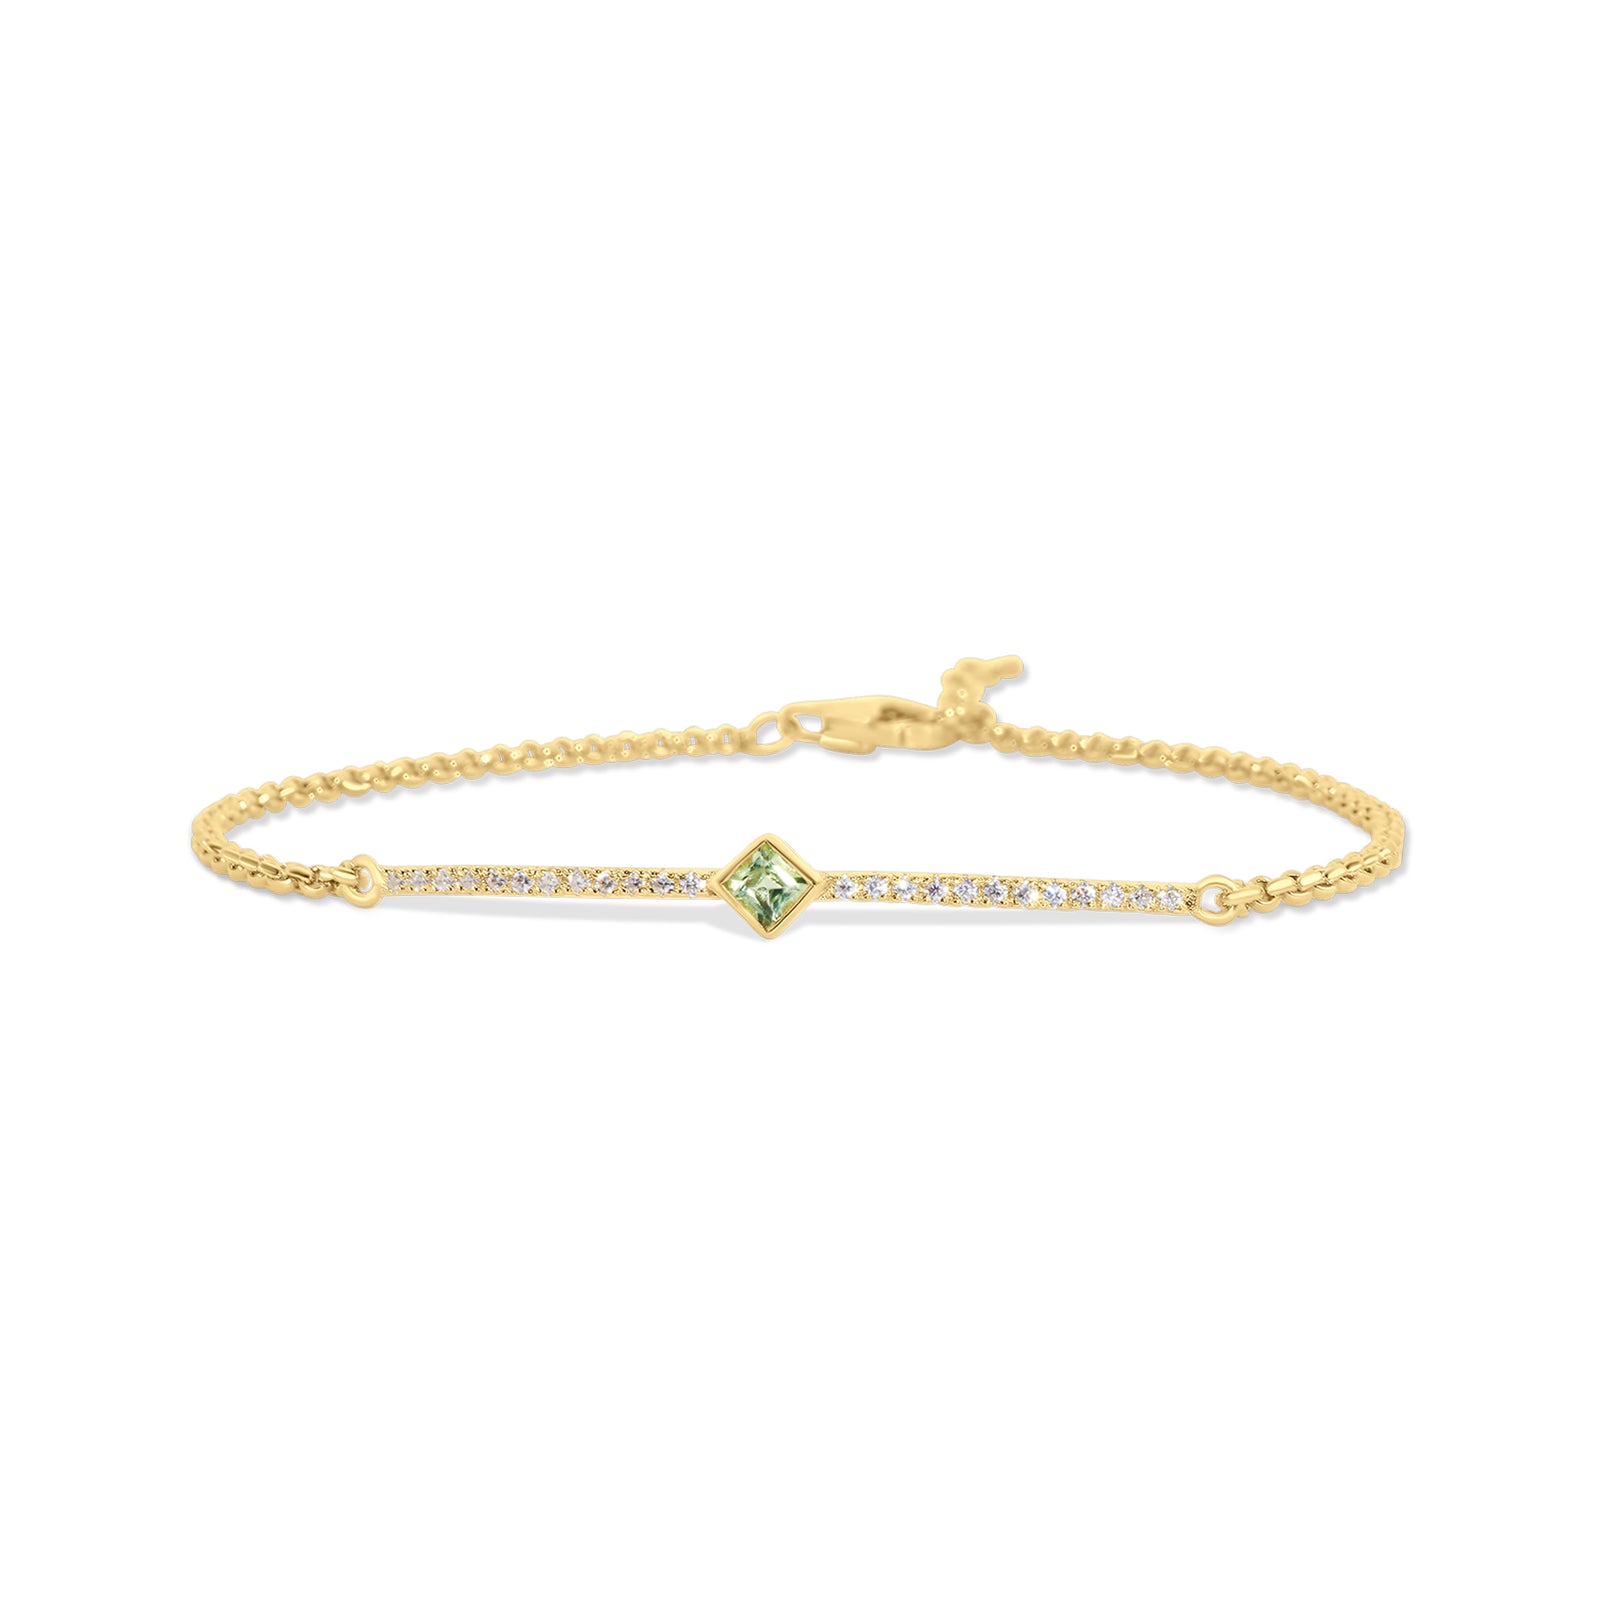 Kemmi: Lingerie, Gold Jewelry, Silver Earrings, Bracelets & more